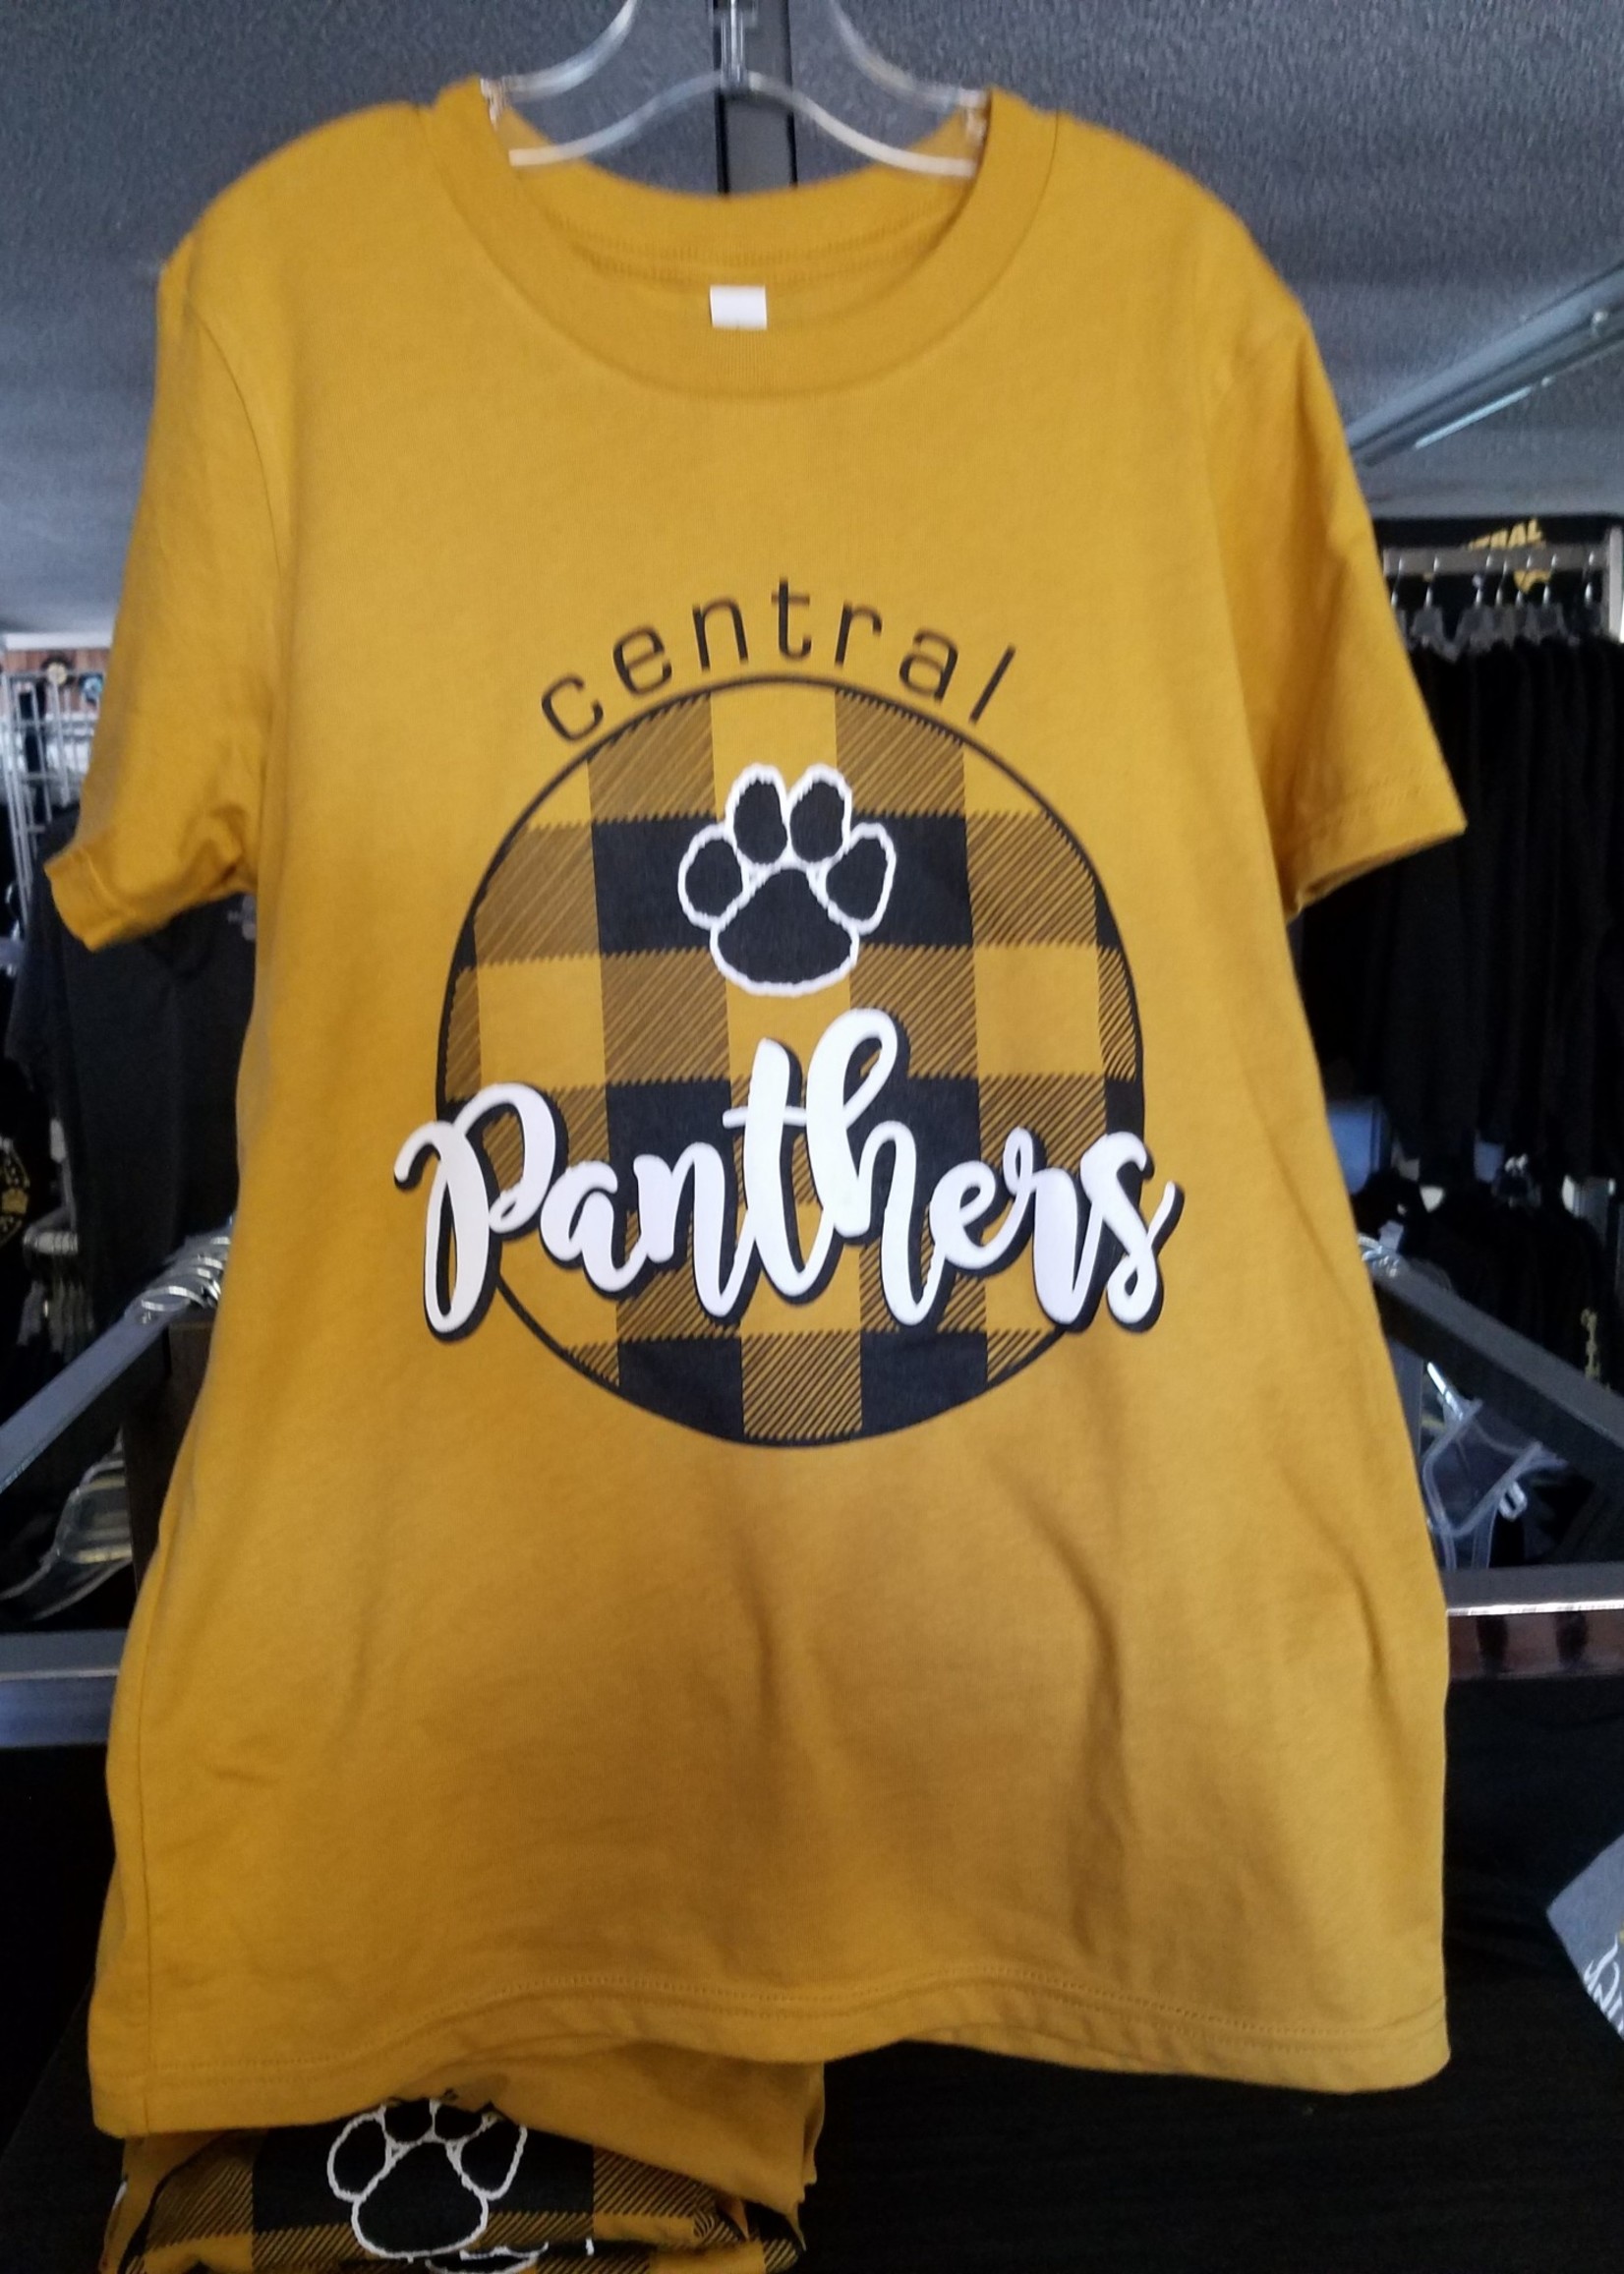 Panthers Buffalo Plaid shirt